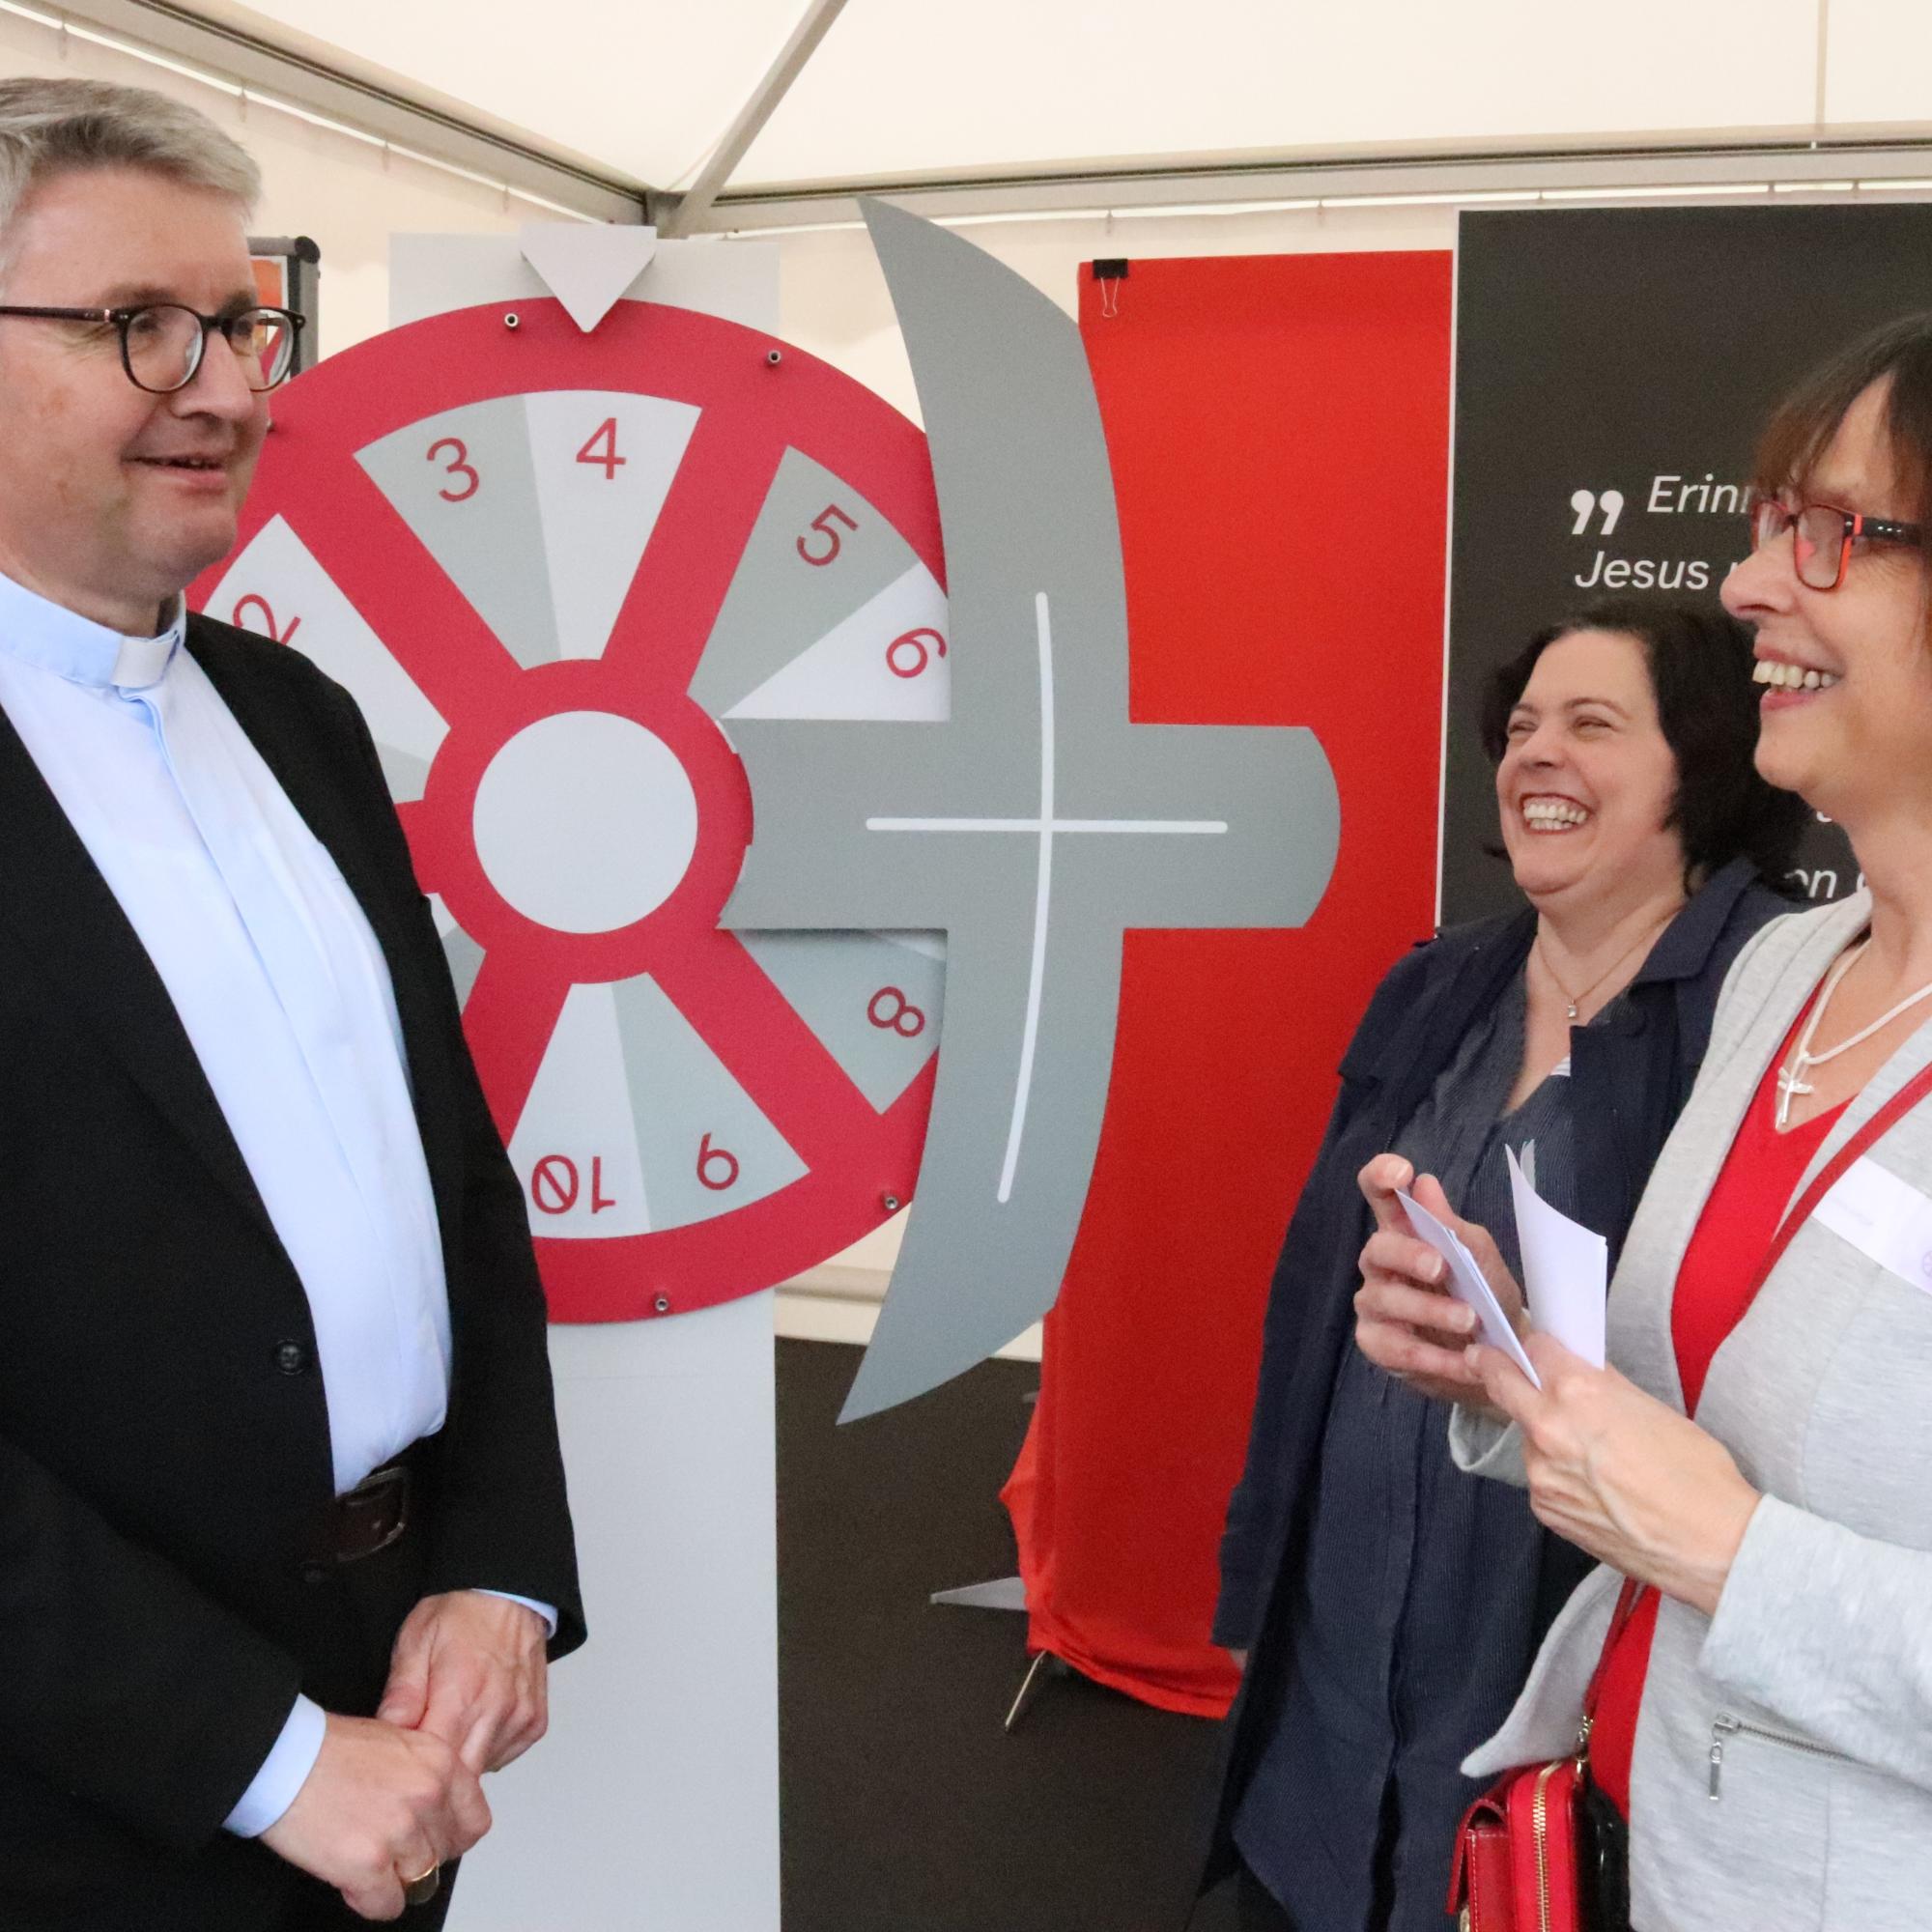 Bischof Kohlgraf und Stephanie Rieth besuchten den Stand des Bistums Mainz unter der Leitung von Susanne Metzger (rechts), Abteilungsleitung Öffentlichkeitsarbeit